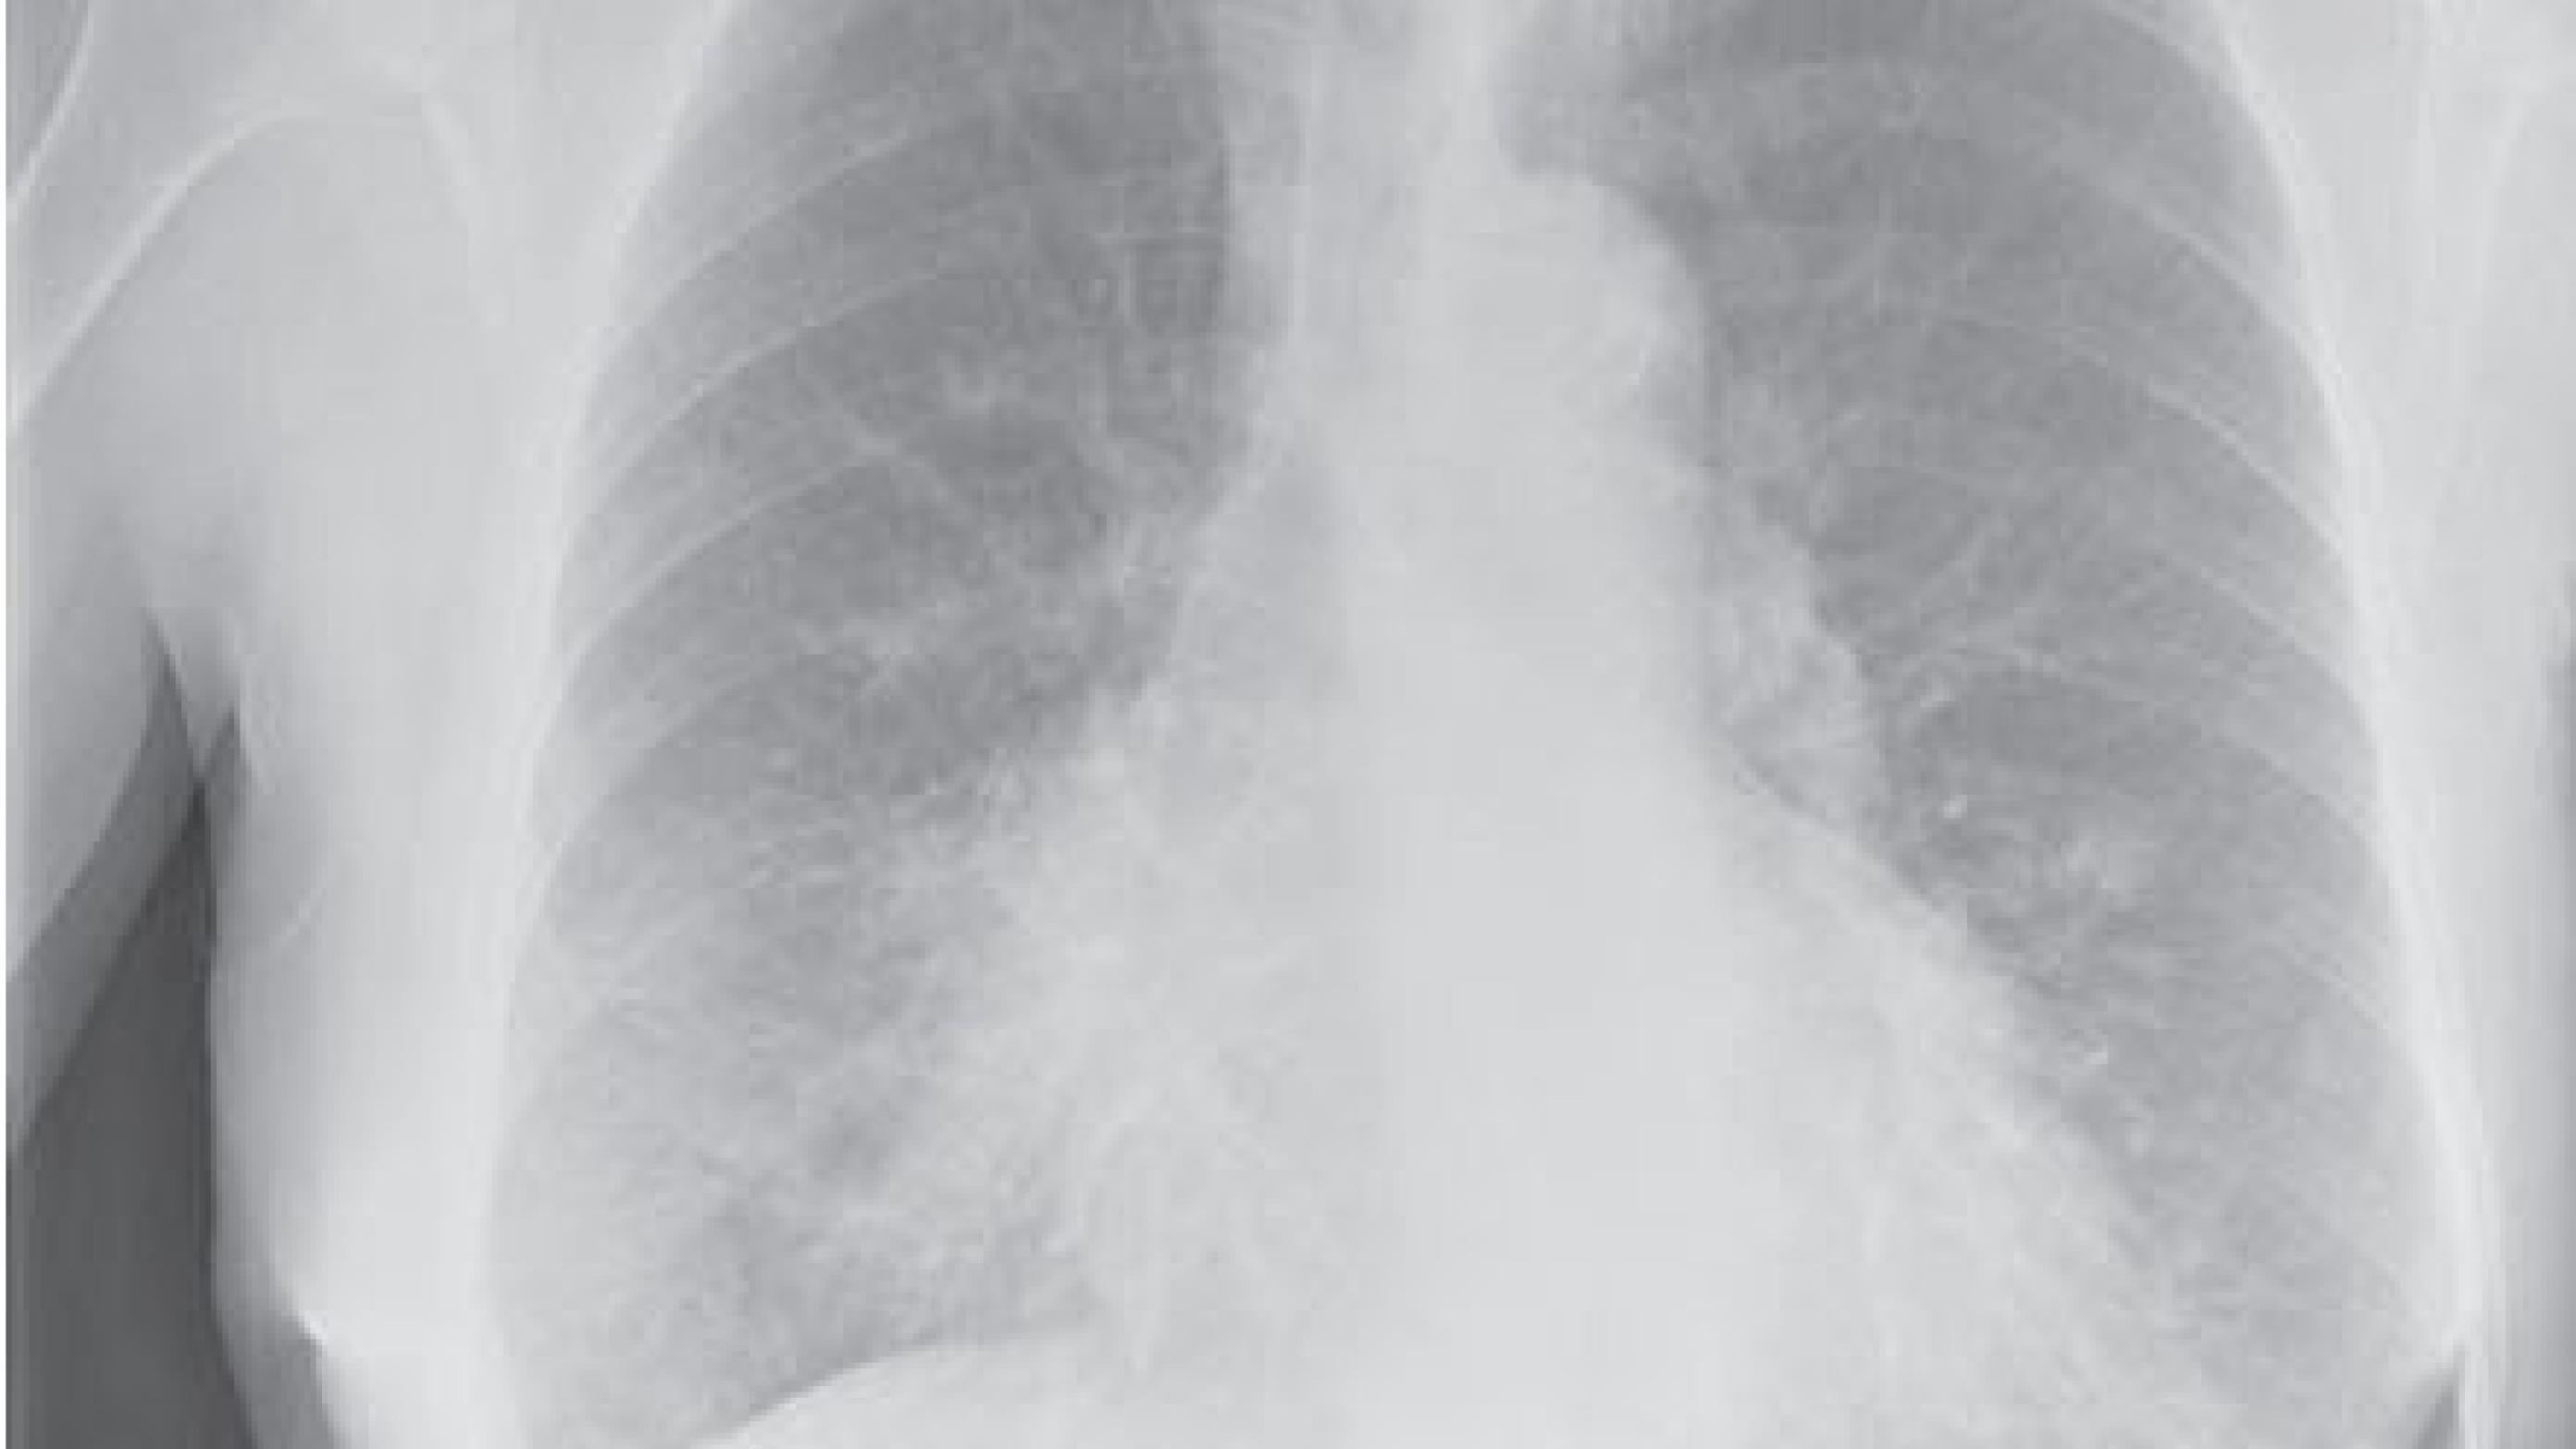 Mellemlapspneumoni hos en patient med kronisk obstruktiv lungesygdom.